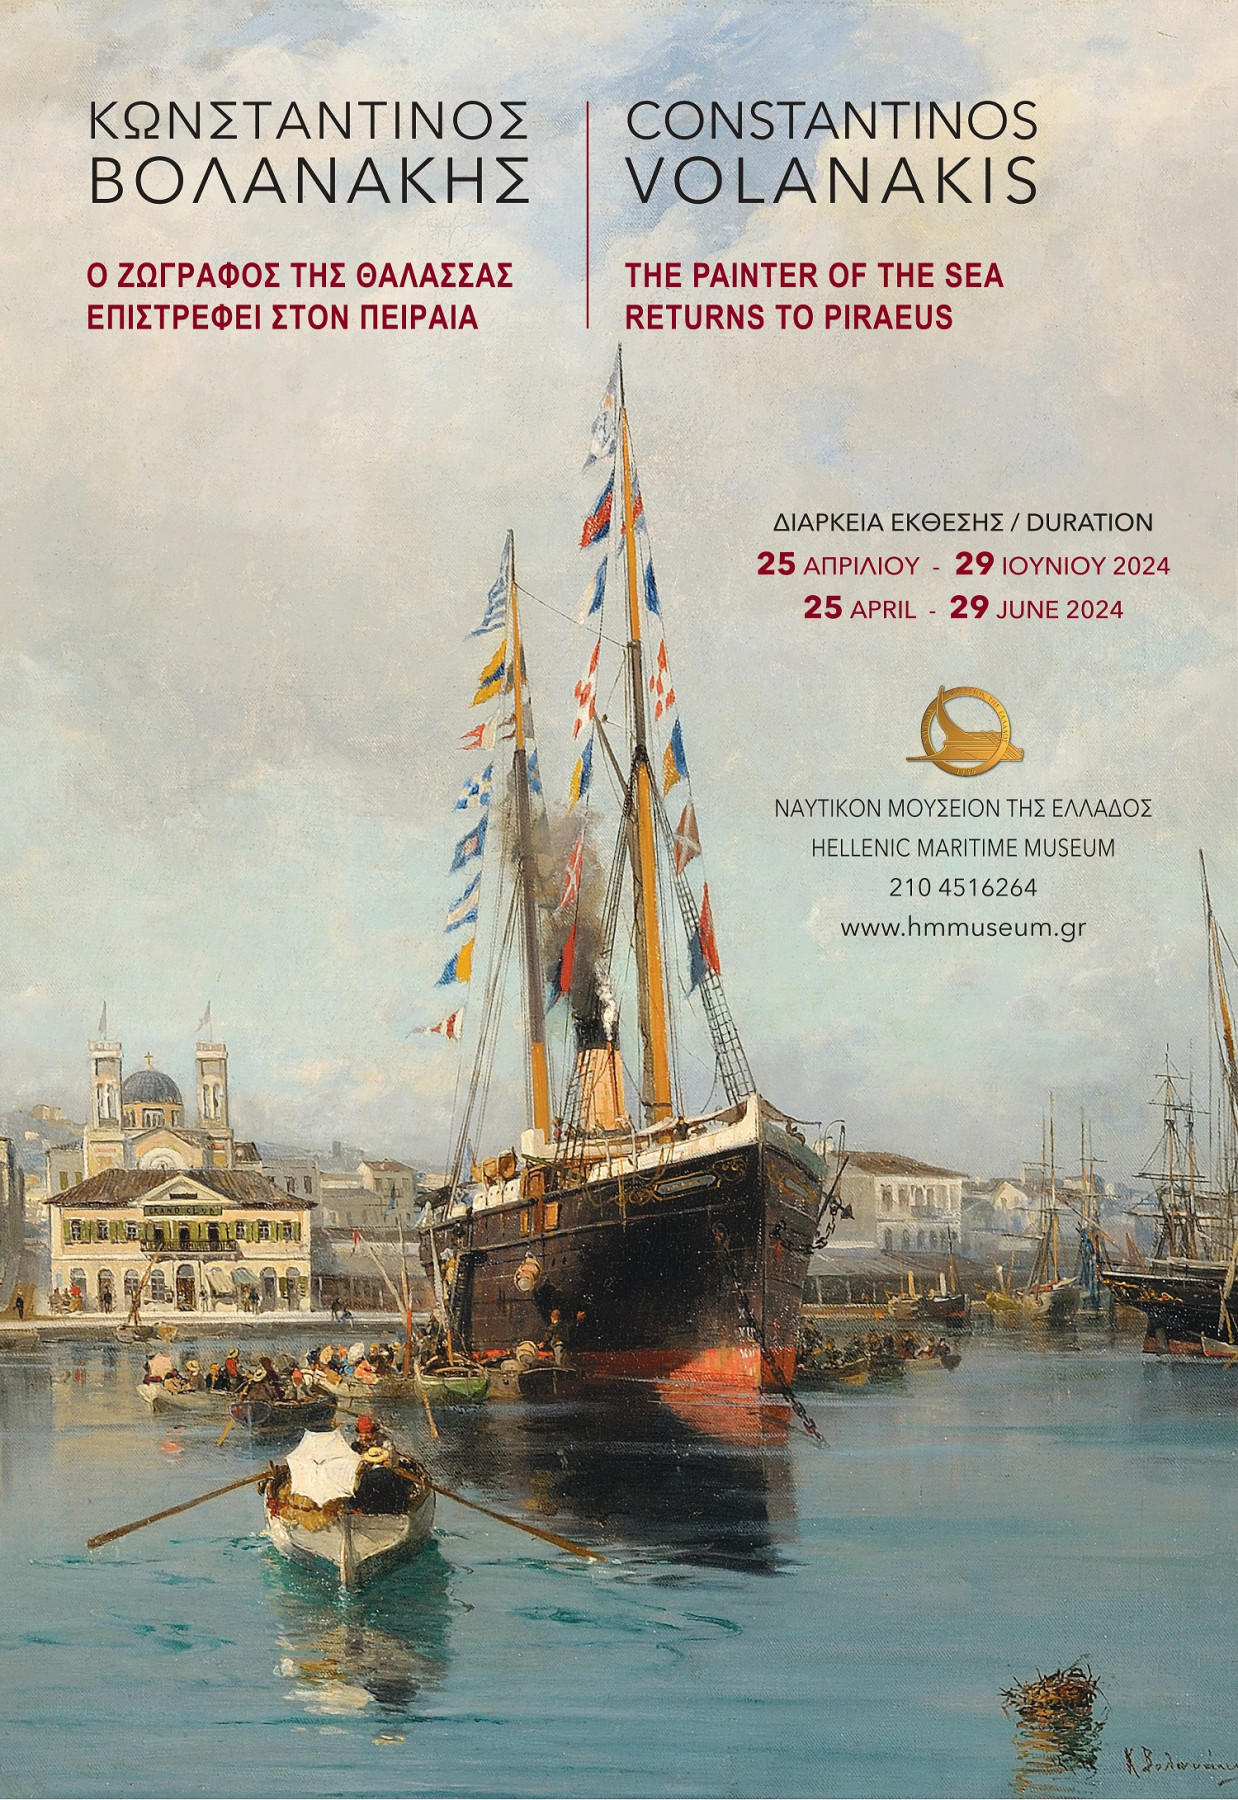 Ναυτικό Μουσείο Ελλάδος: Έκθεση αφιερωμένη στον «ζωγράφο της θάλασσας» |  Ναυτικά Χρονικά